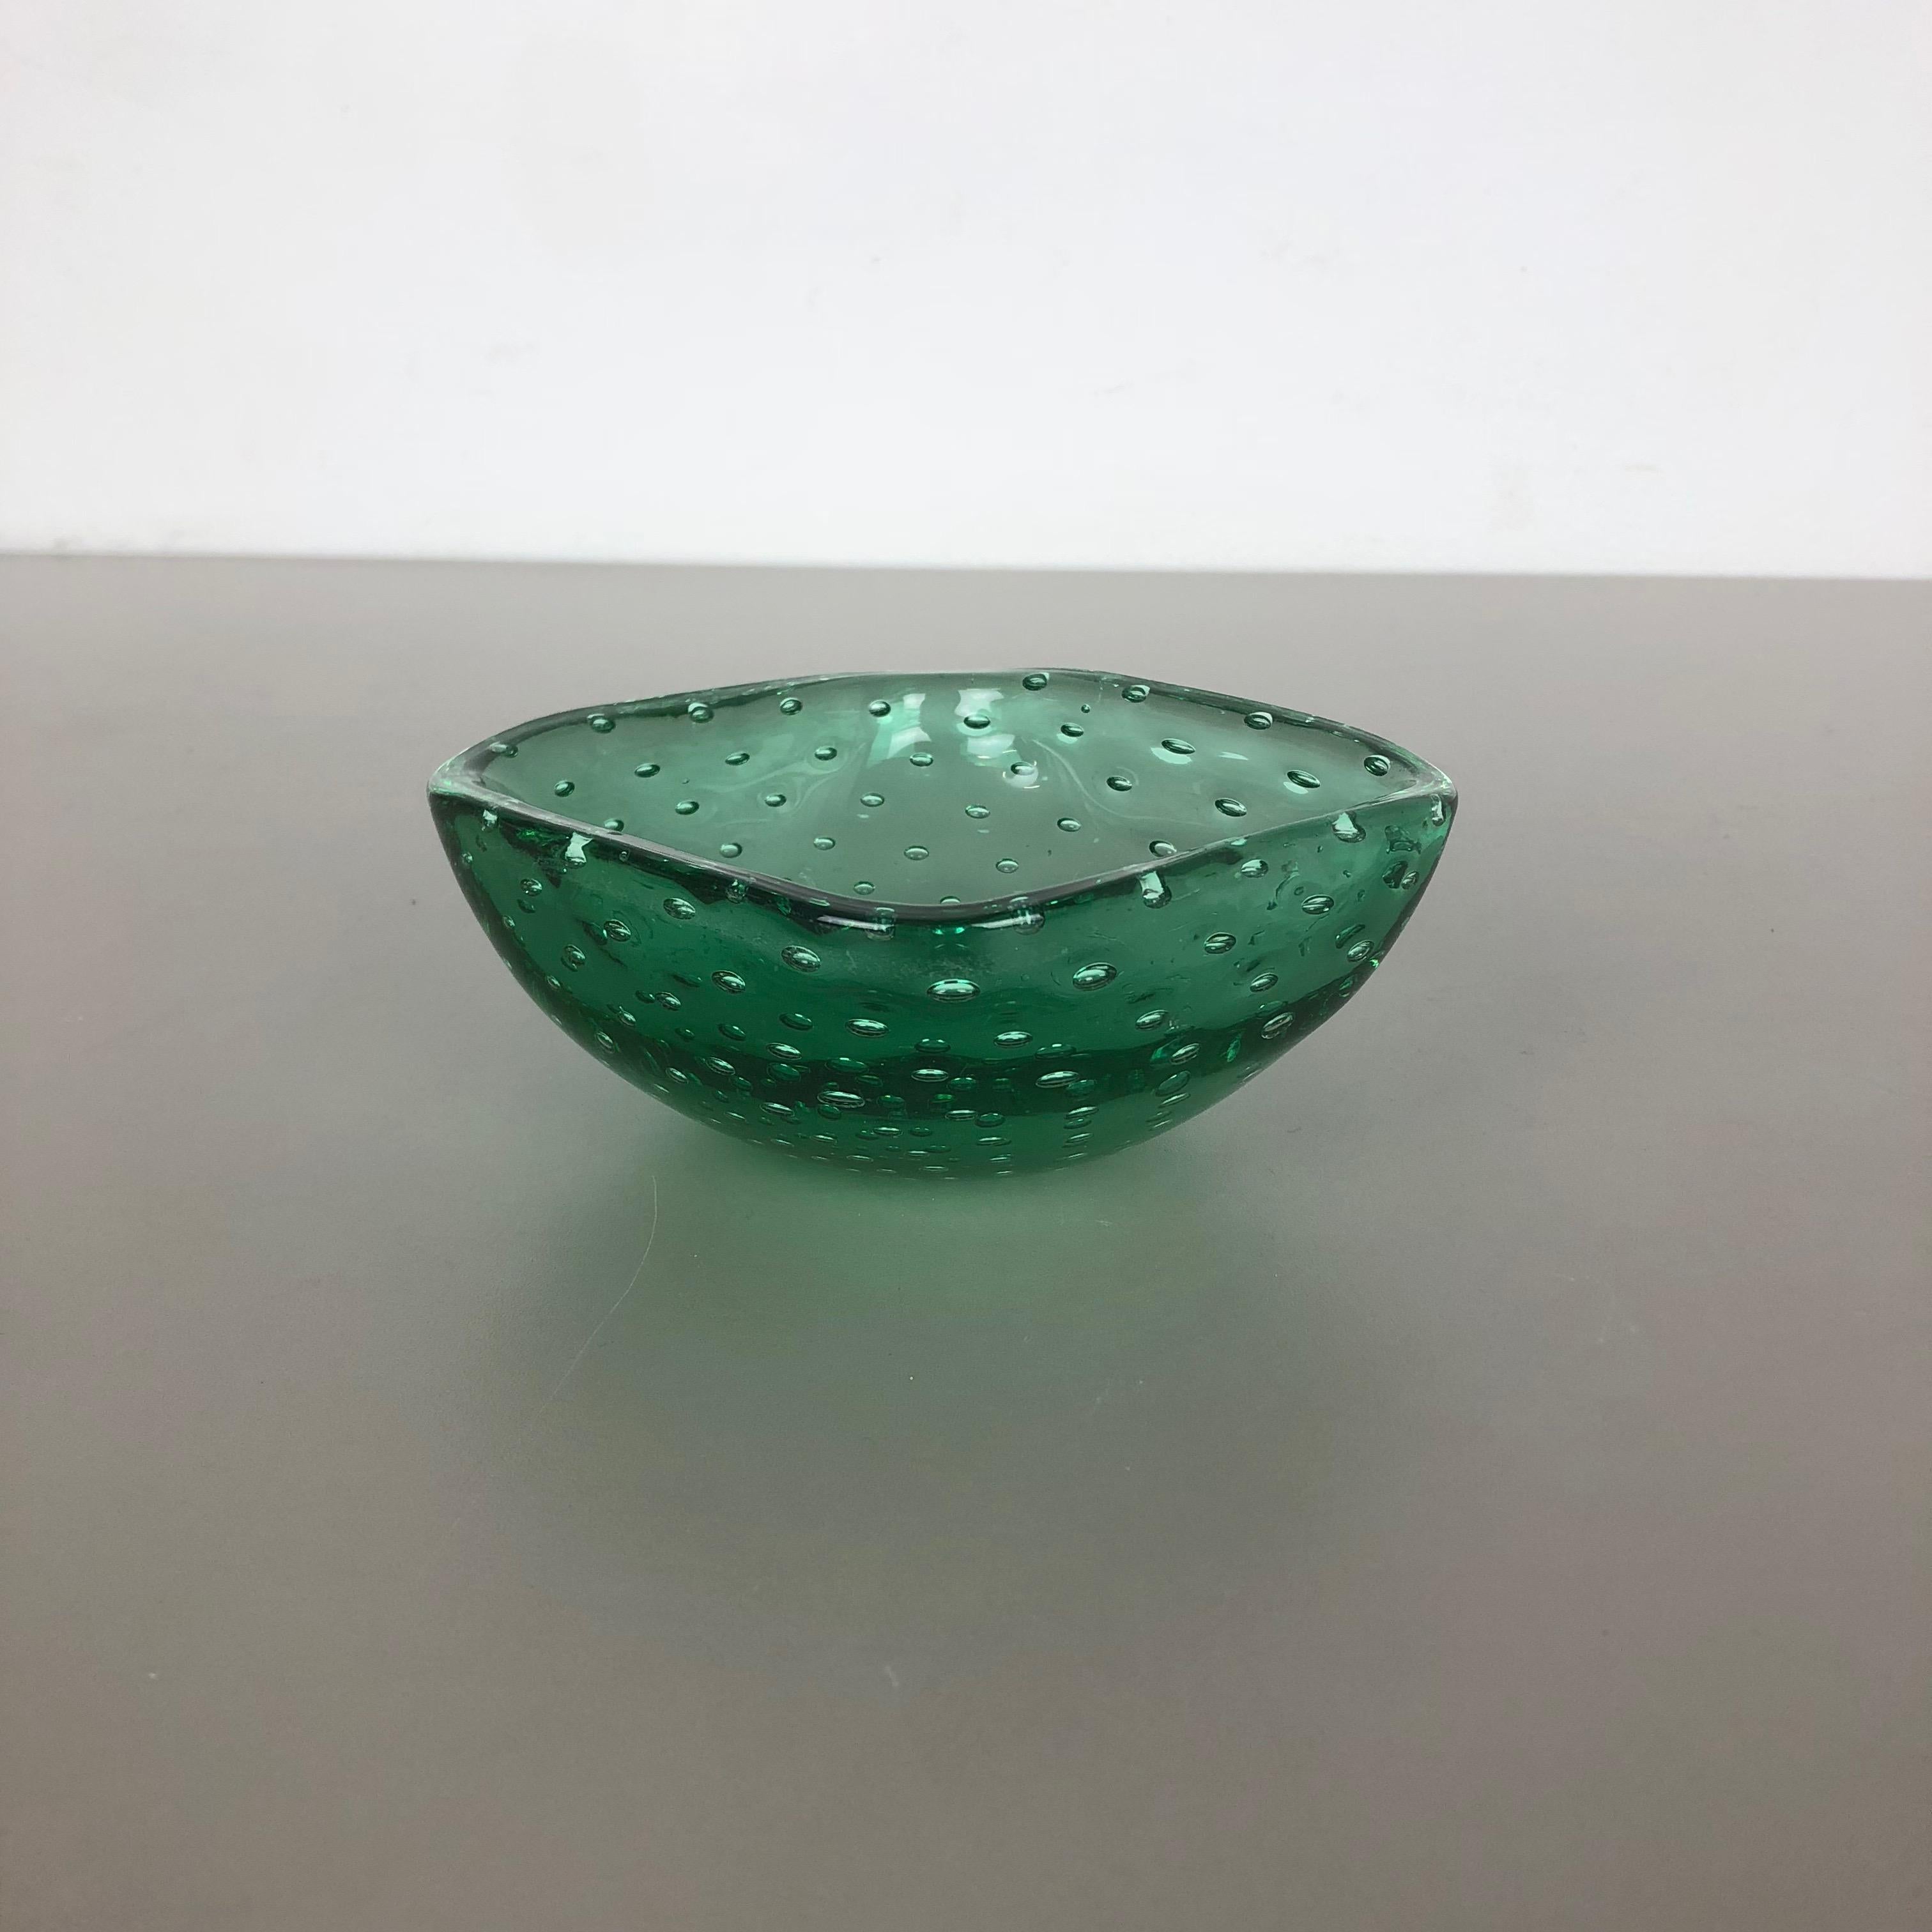 Artikel:

Murano-Glasschale, Aschenbecher-Element


Herkunft:

Murano, Italien


Jahrzehnt:

1970s


Diese originelle Muschelschale aus Glas wurde in den 1970er Jahren in Murano, Italien, hergestellt. Ein elegantes grünes